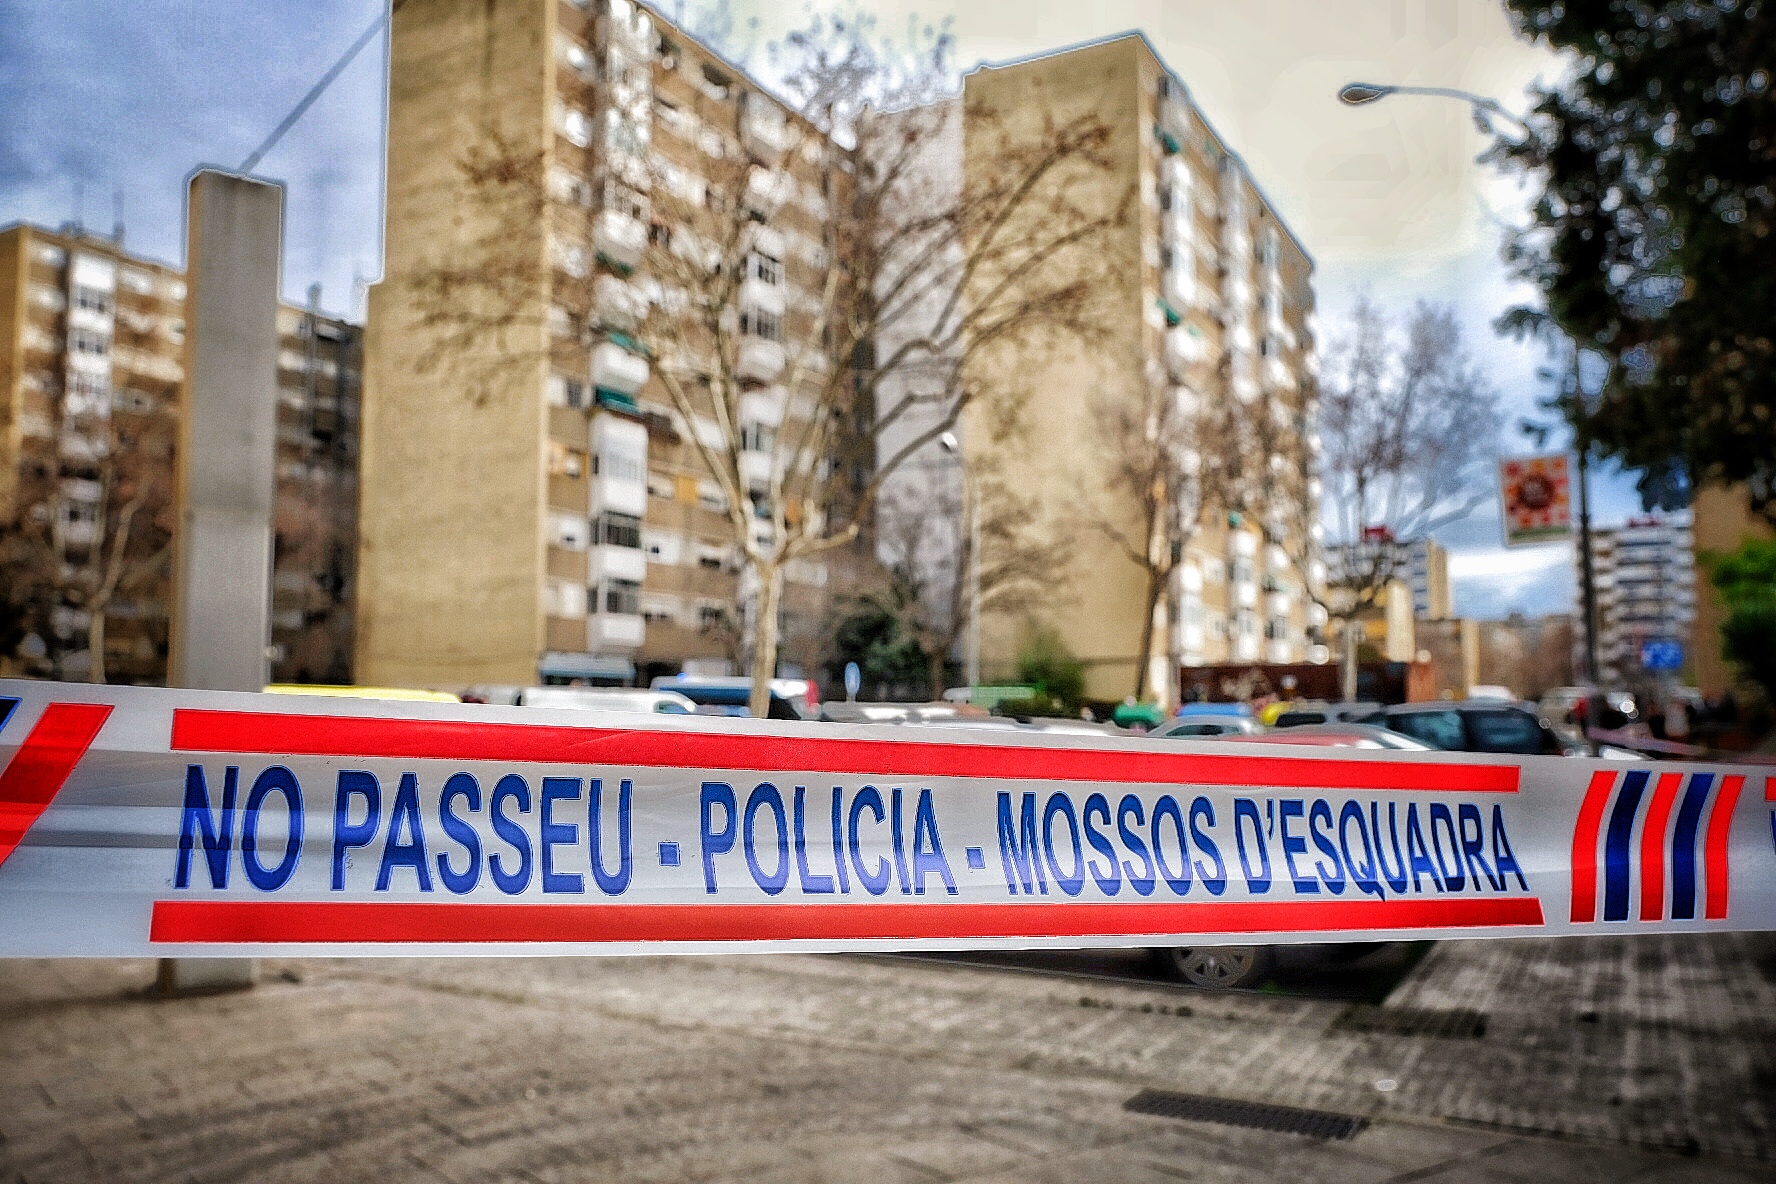 Els Mossos dEsquadra detenen un home al carrer Santander per la seva presumpta implicaci en la mort d'una dona